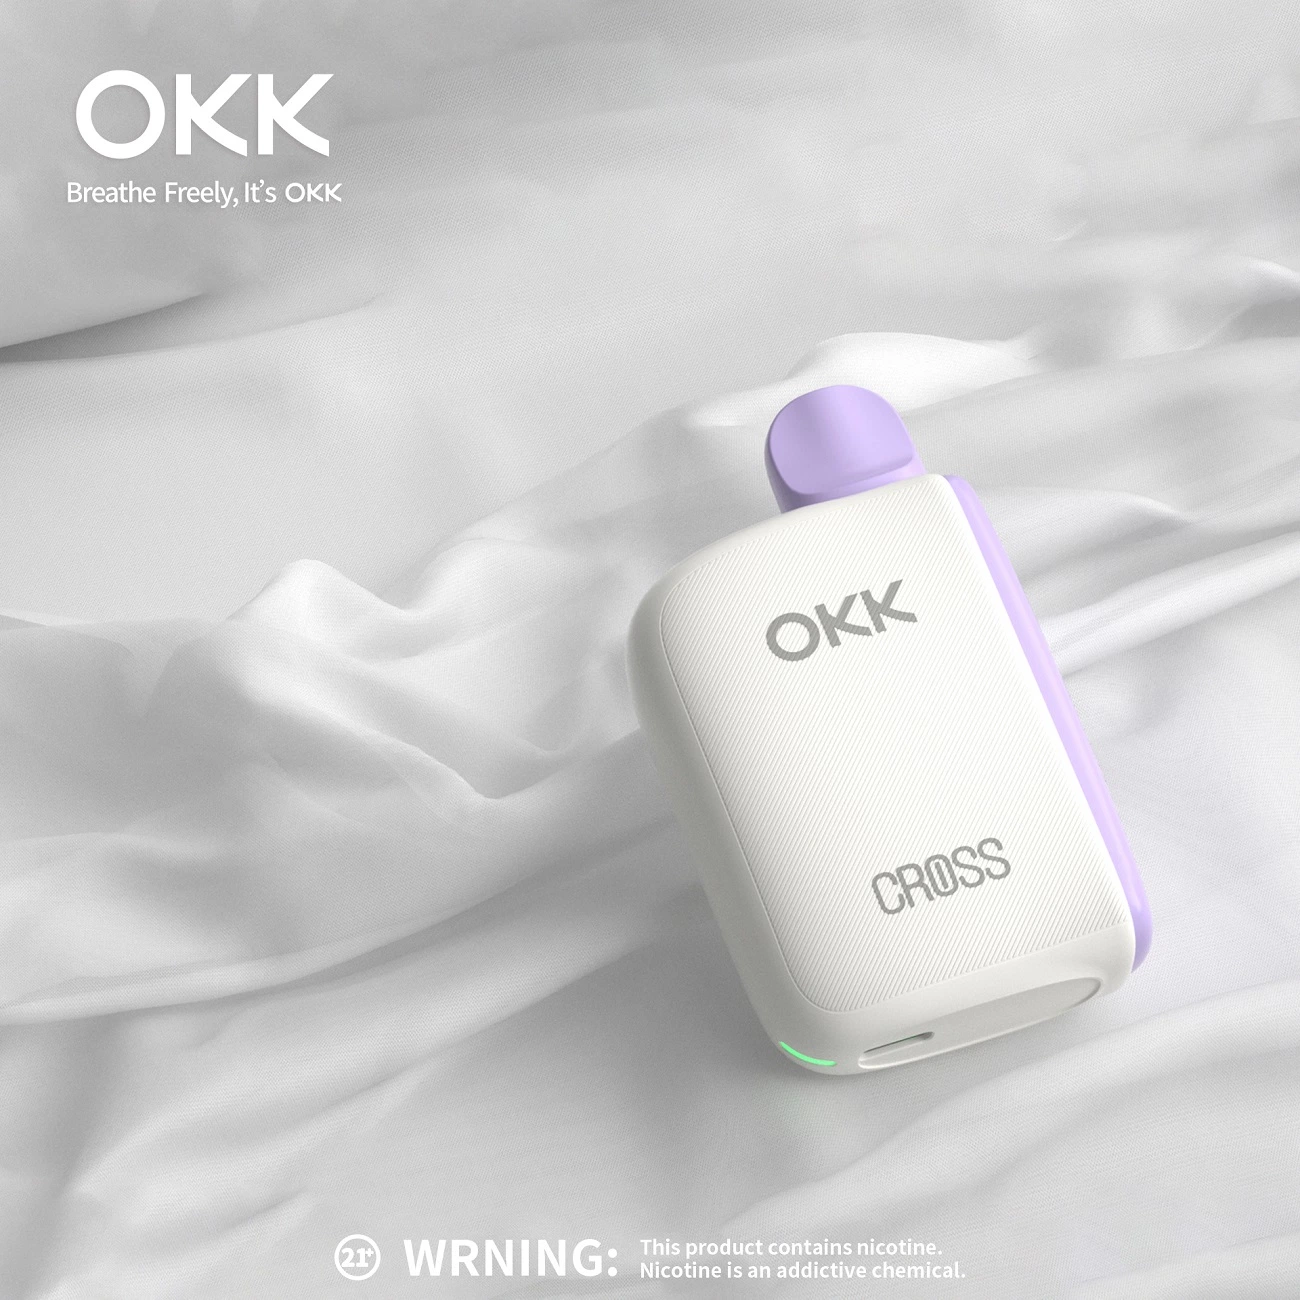 Authentic OKK Cross einmal-Pod-Gerät mit vorgefülltem 12ml E-Saft Ersatzpatrone Für Vape